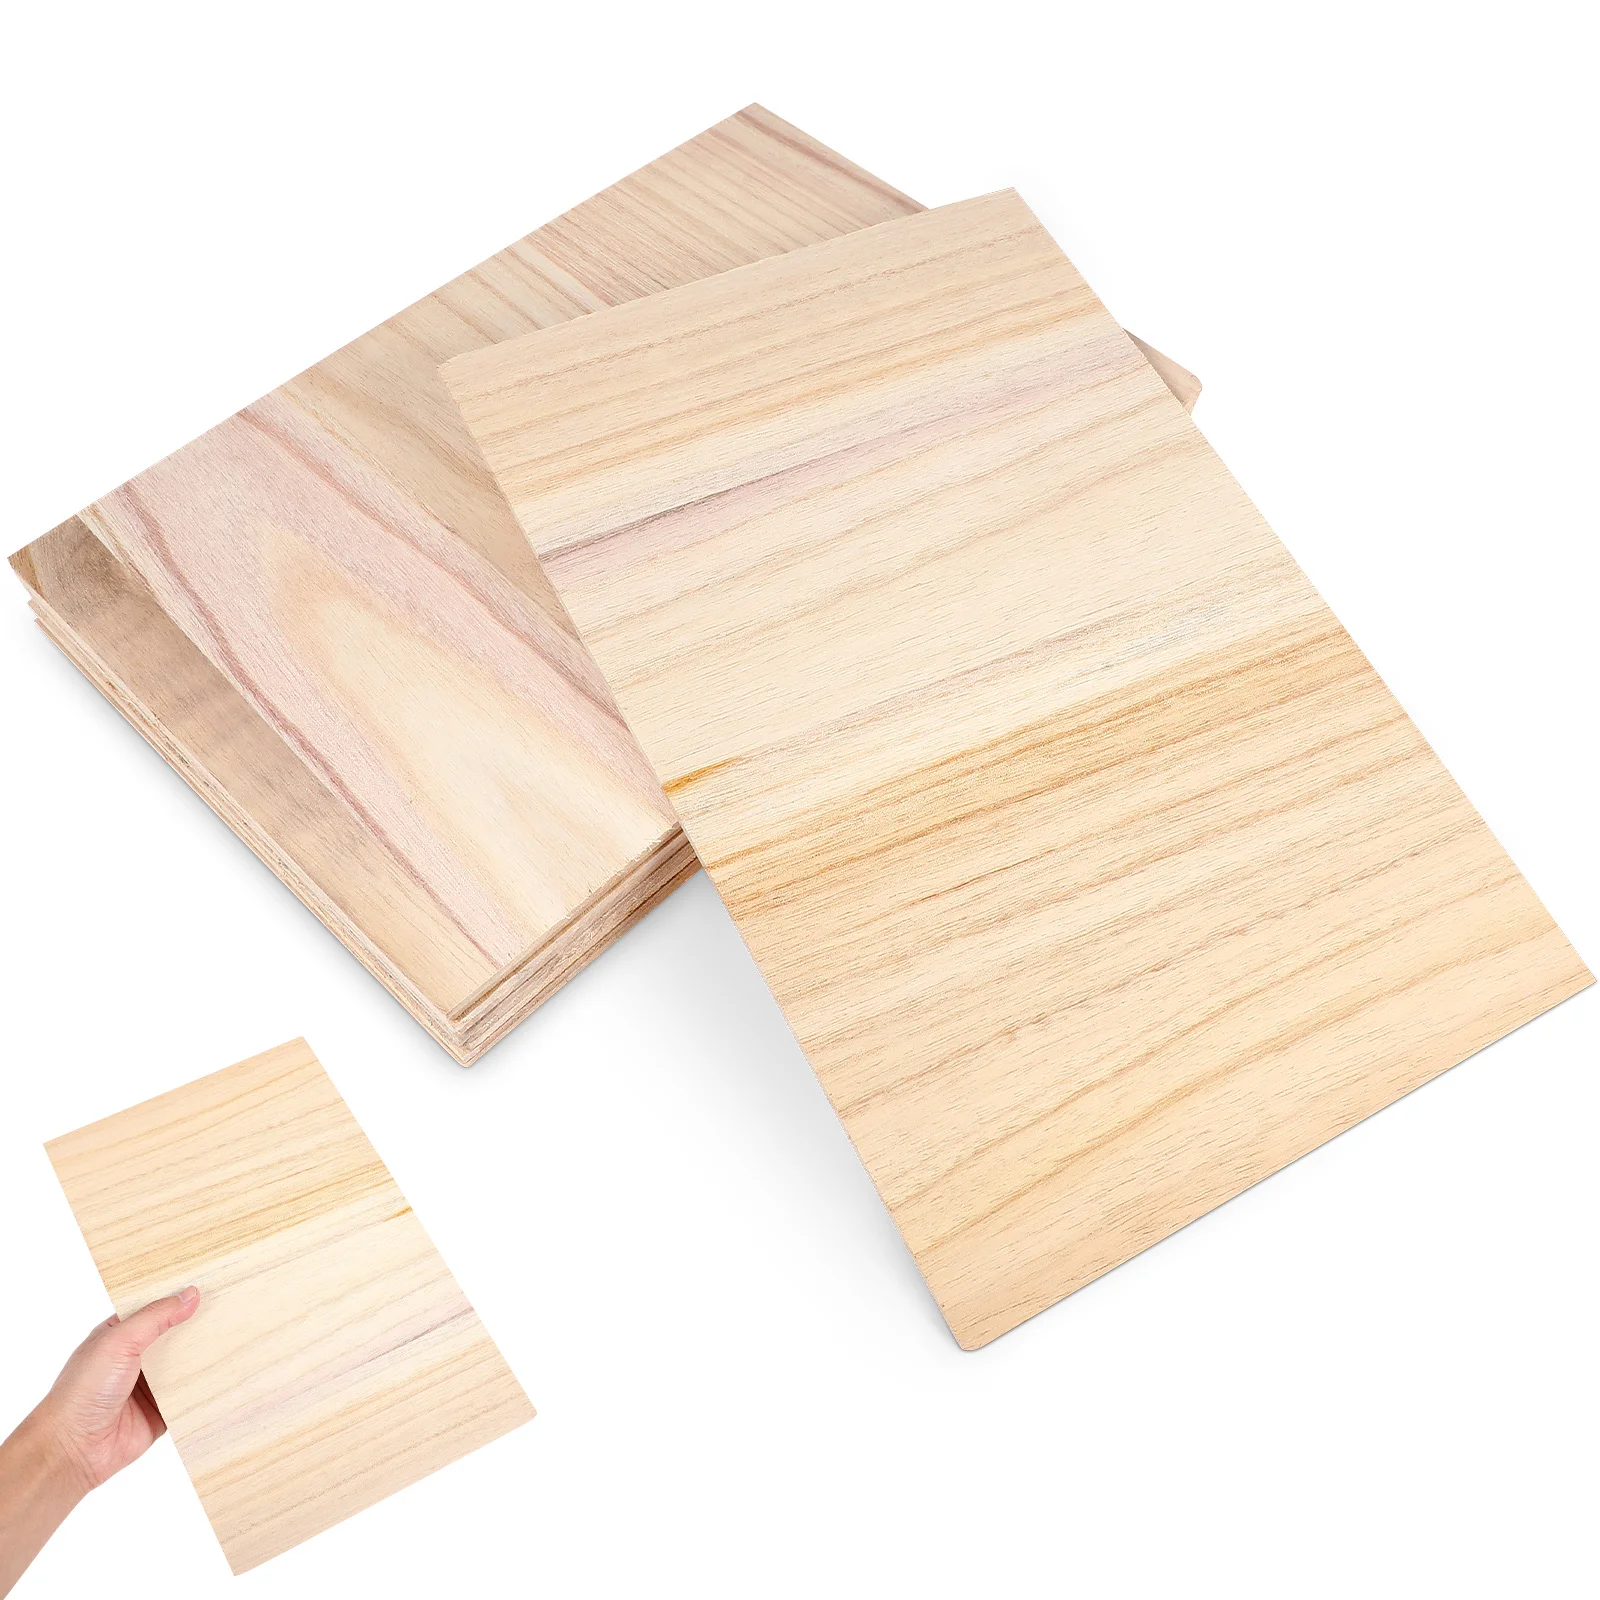 

10 Pcs Breaking Boards Wood Breaking Boards Professional Breaking Planks Taekwondo Kick Pads Training Boards